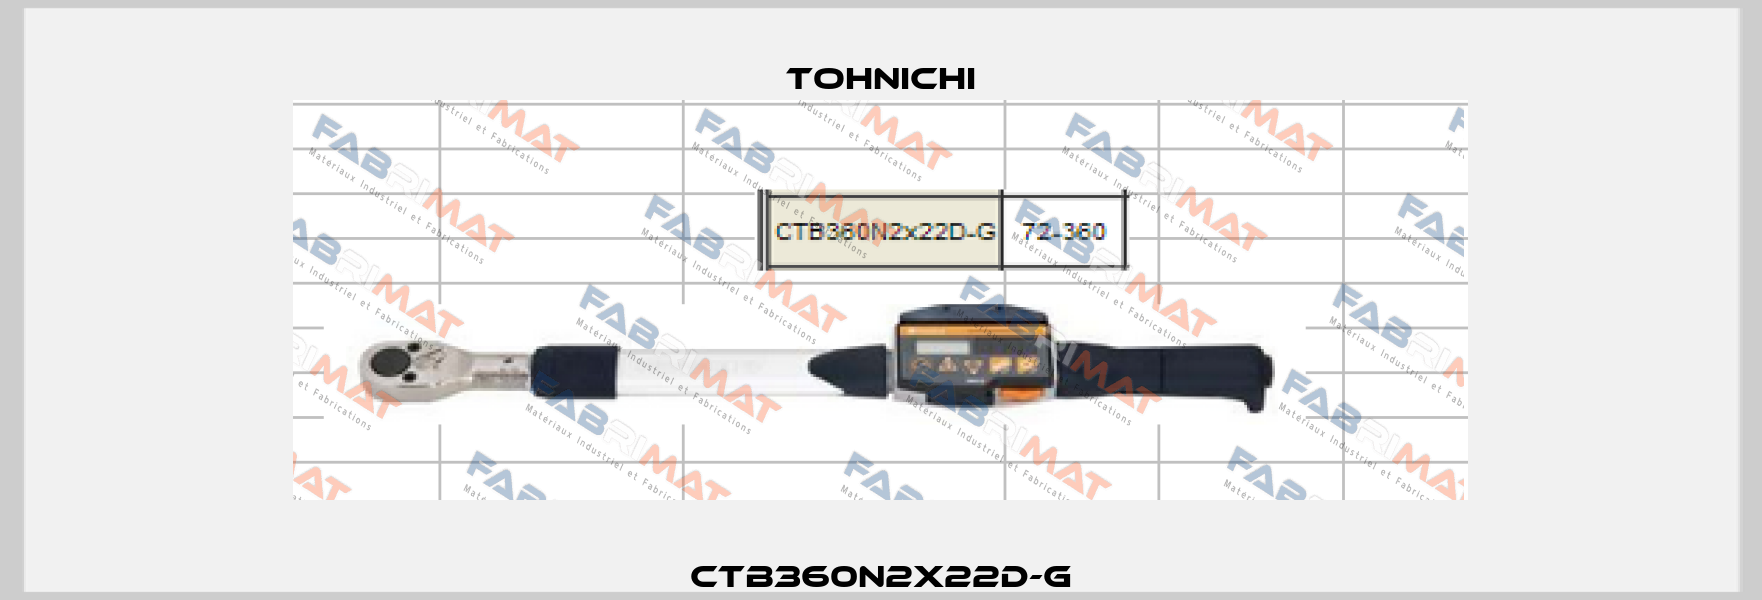 CTB360N2x22D-G Tohnichi